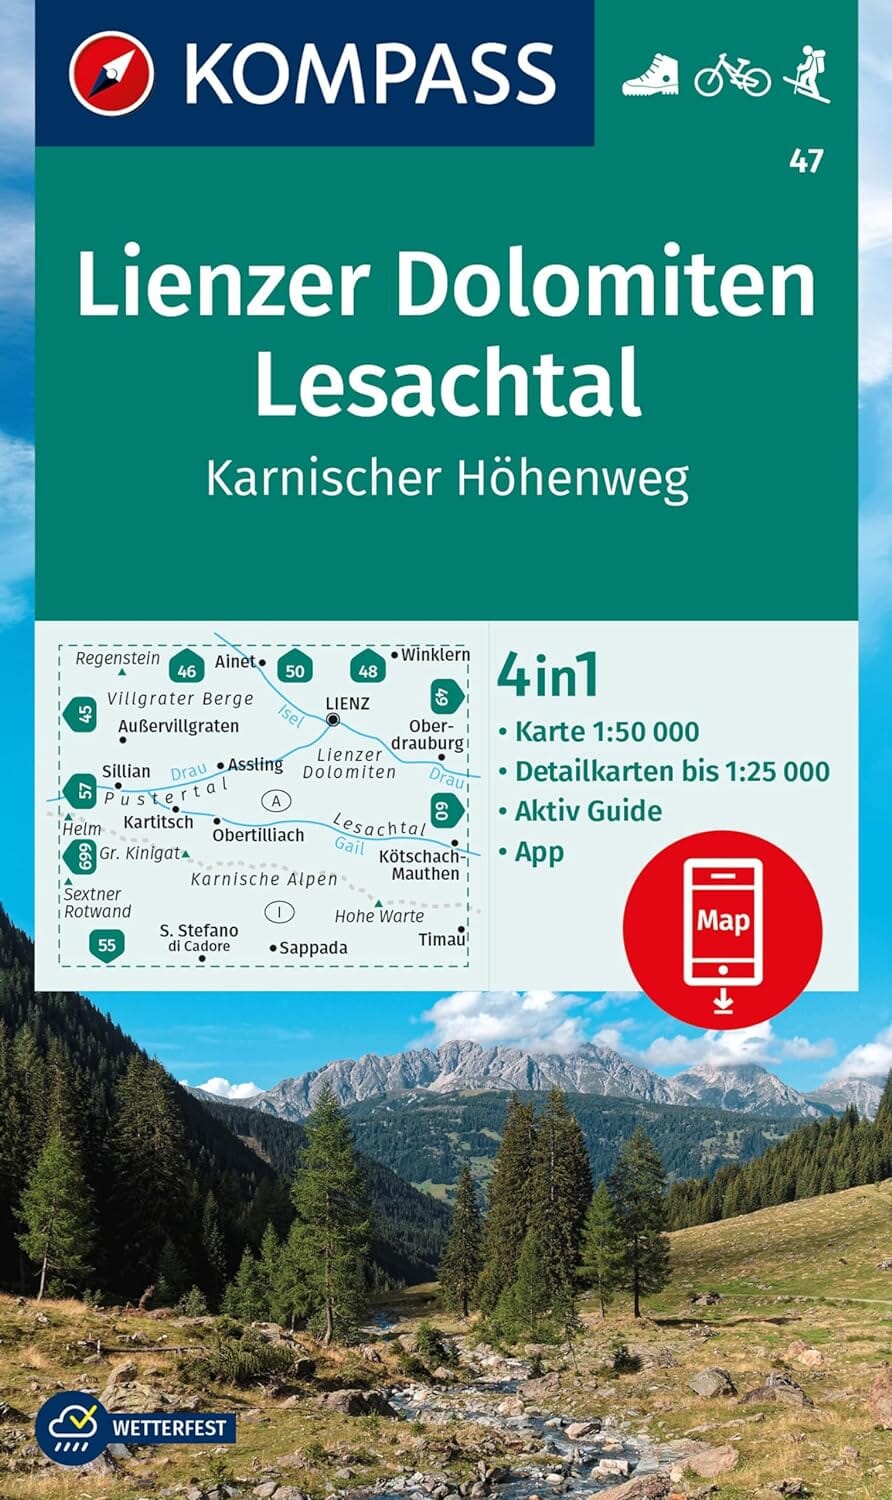 Carte de randonnée n° 47 - Lienzer Dolomiten, Lesachtal (Tyrol, Autriche) | Kompass carte pliée Kompass 